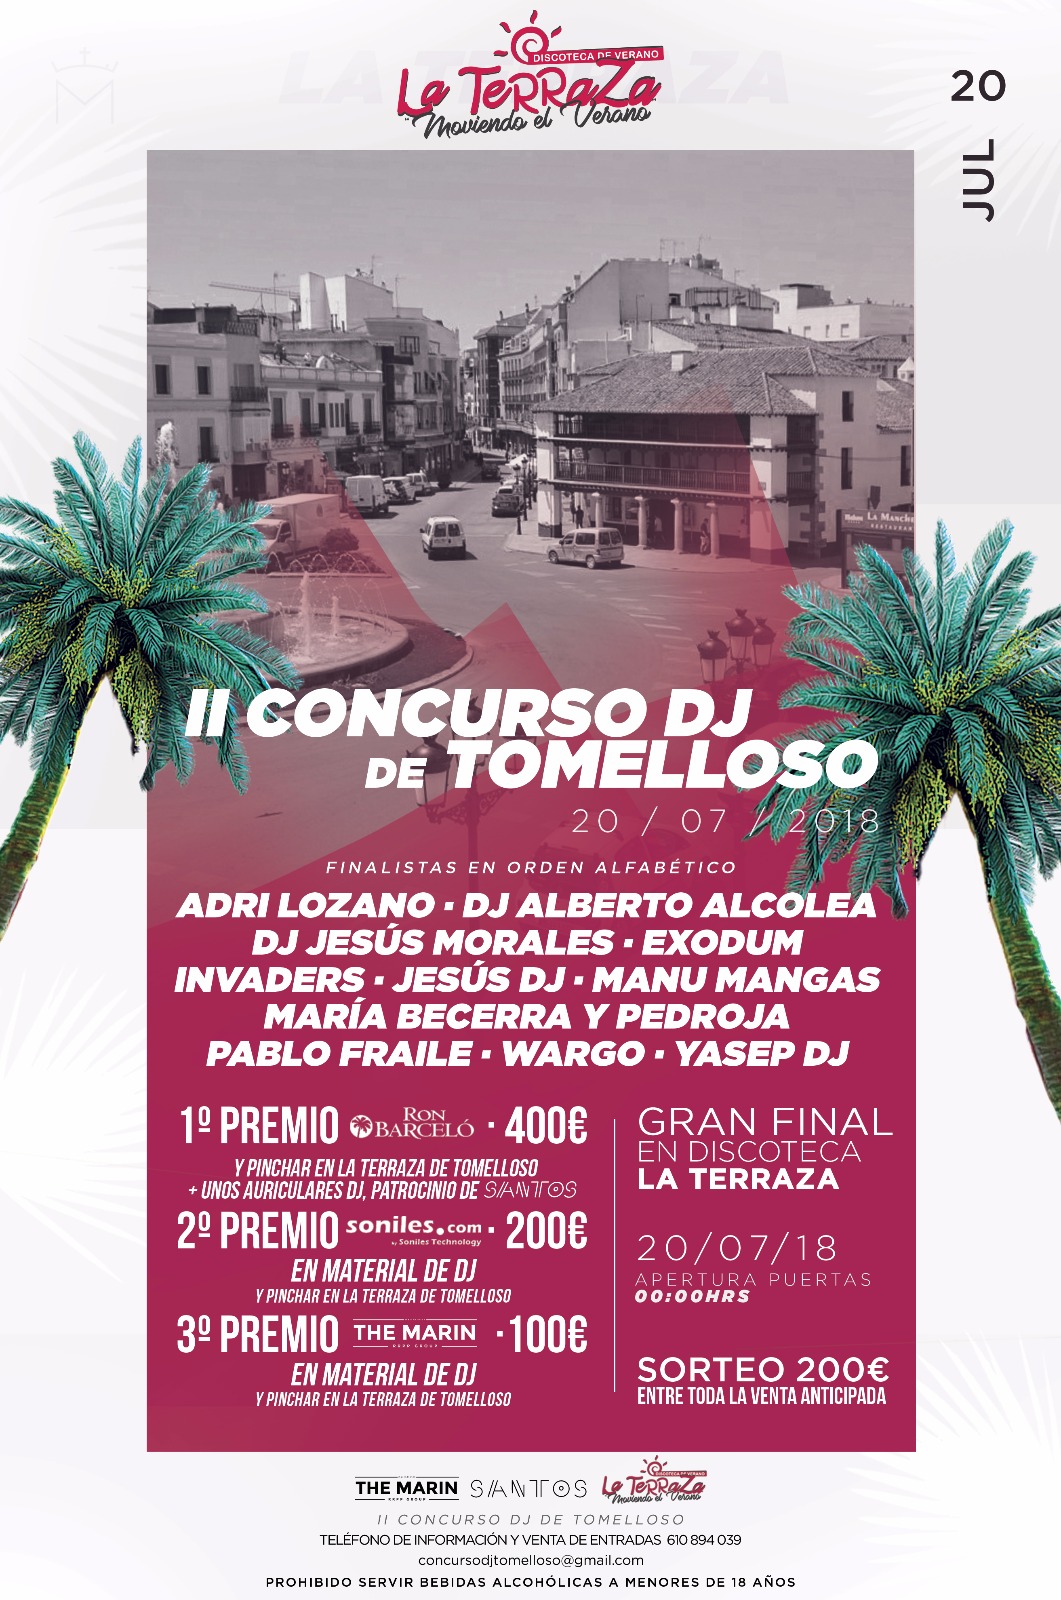 20 minutos y más de 1000€ en premios en II Concurso de DJ de Tomelloso